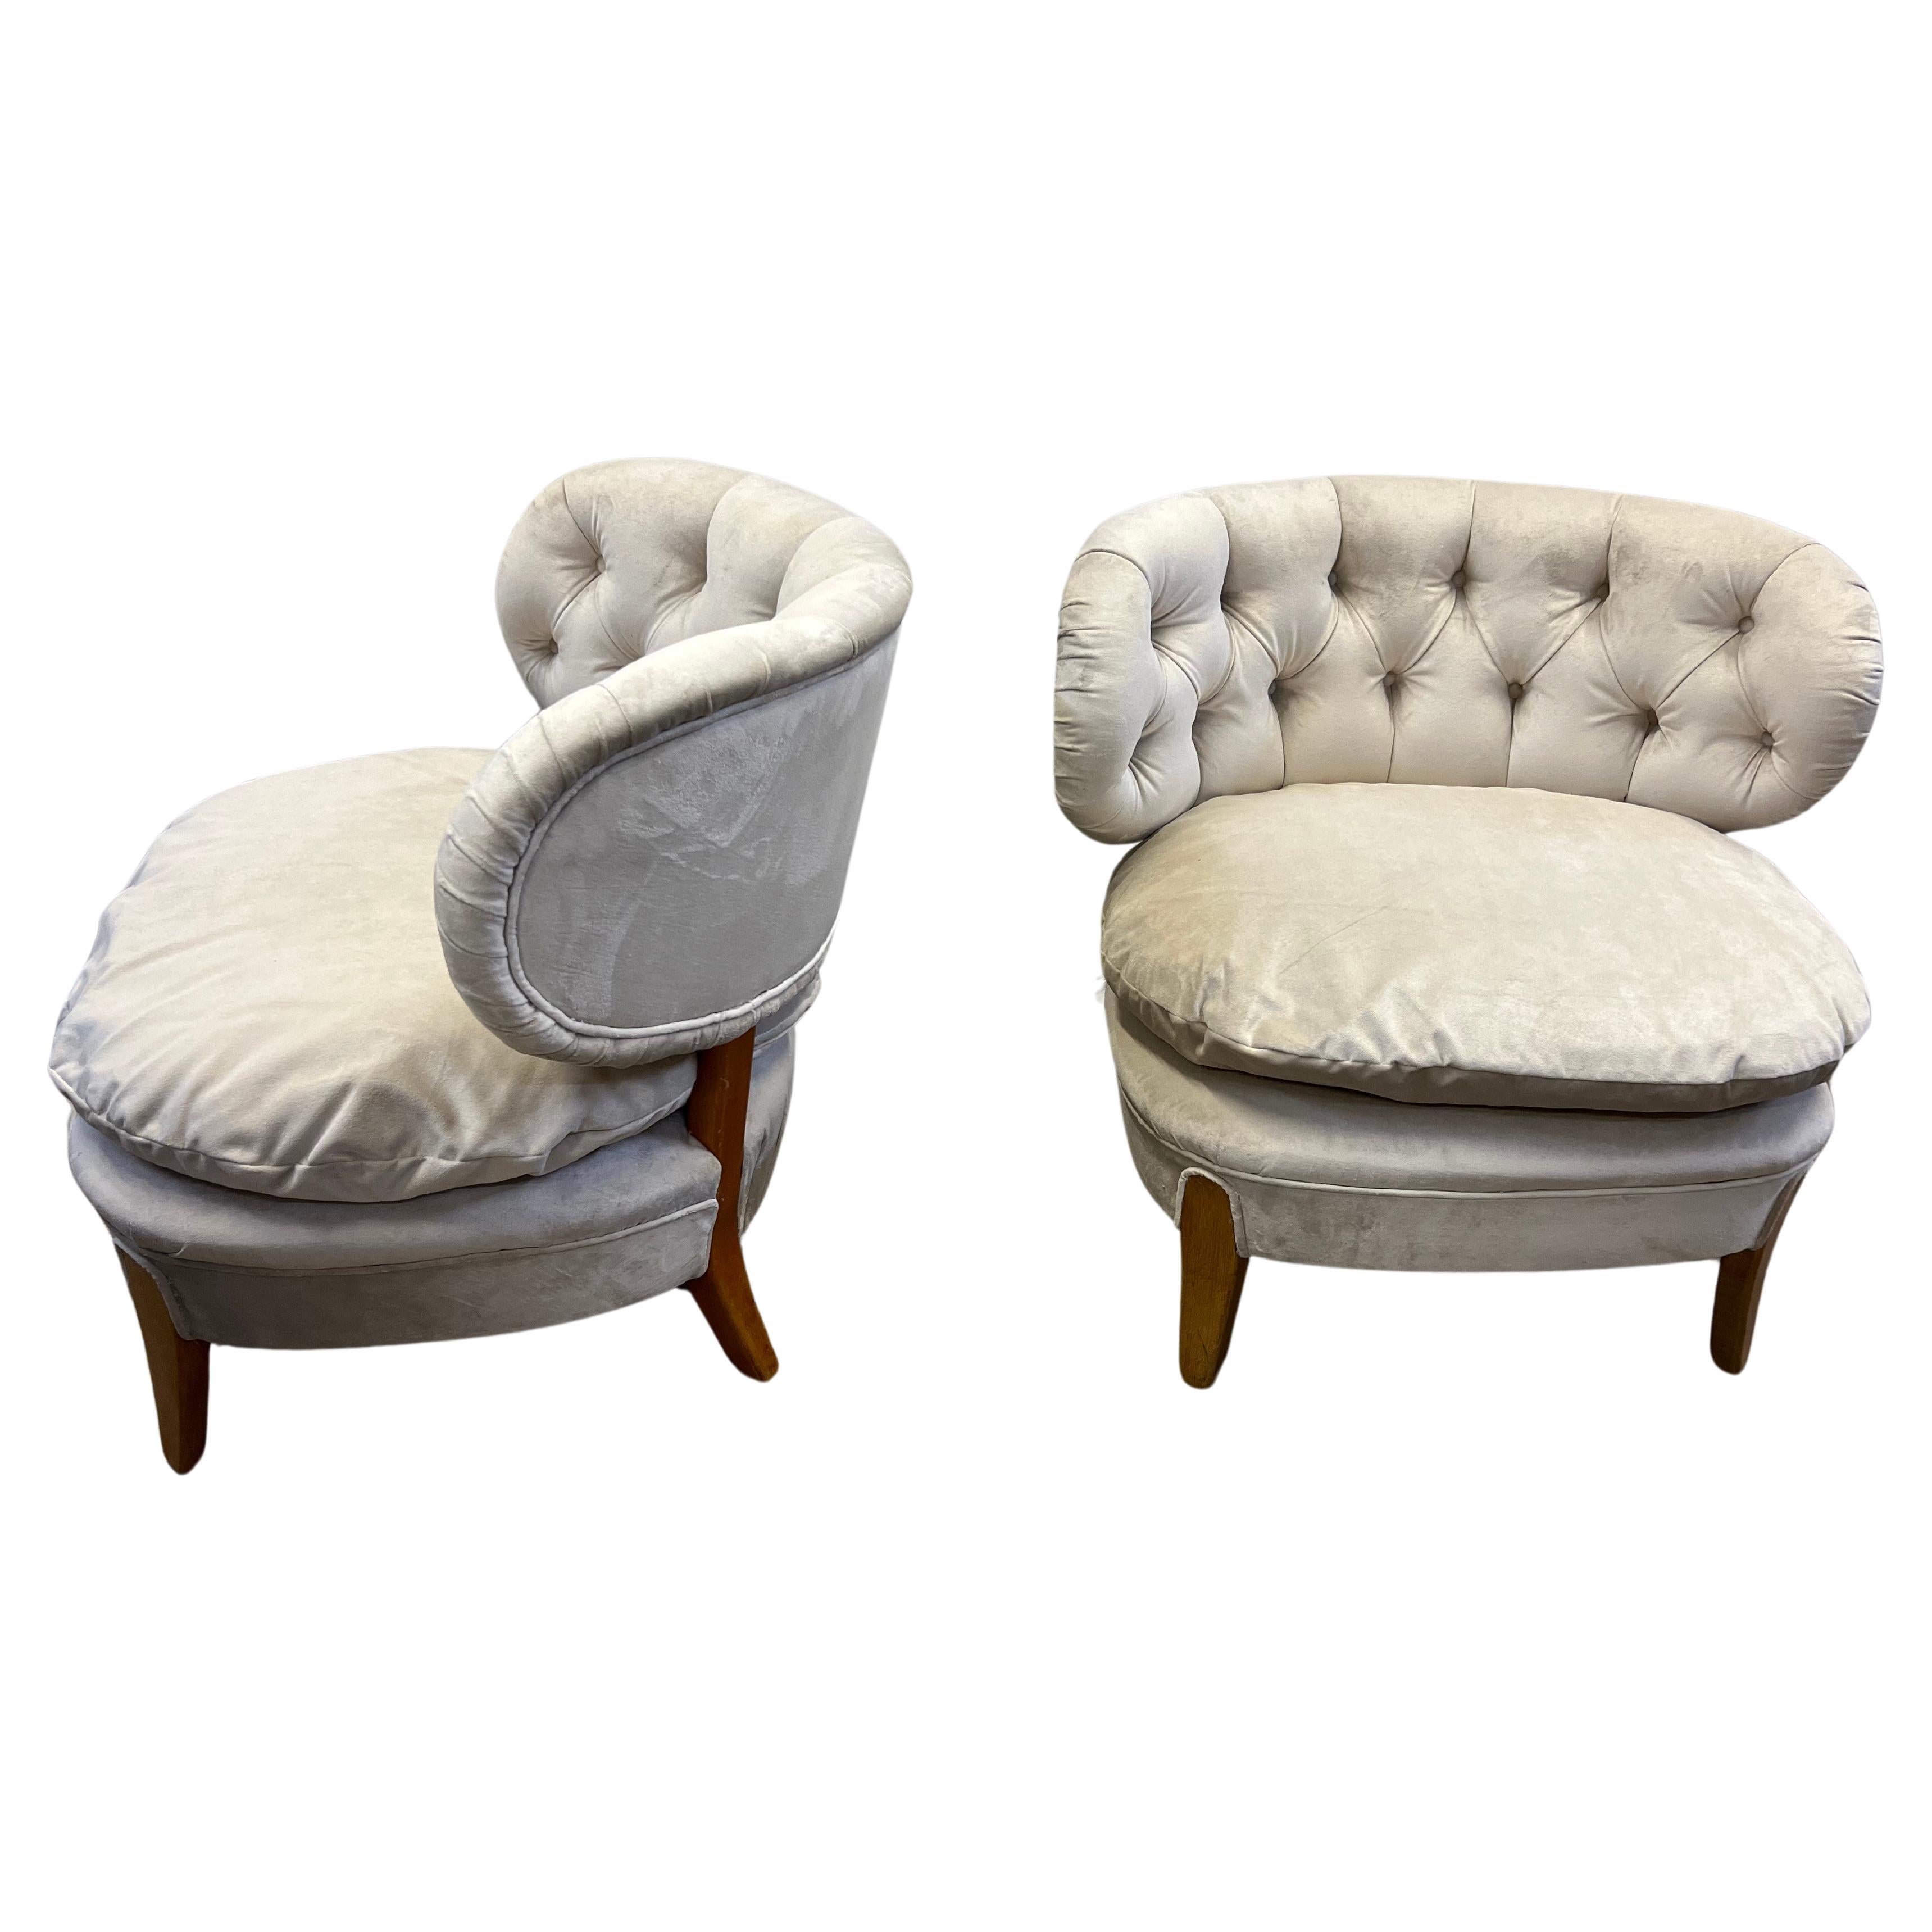 Was für ein schönes und besonderes Paar originaler Otto Schultz Stühle, die vor kurzem neu gepolstert wurden und mit einem losen Kissen aus luxuriösem taupefarbenem Samt ausgestattet sind! Diese sind buchstäblich bereit, in jedem Designer-Raum von